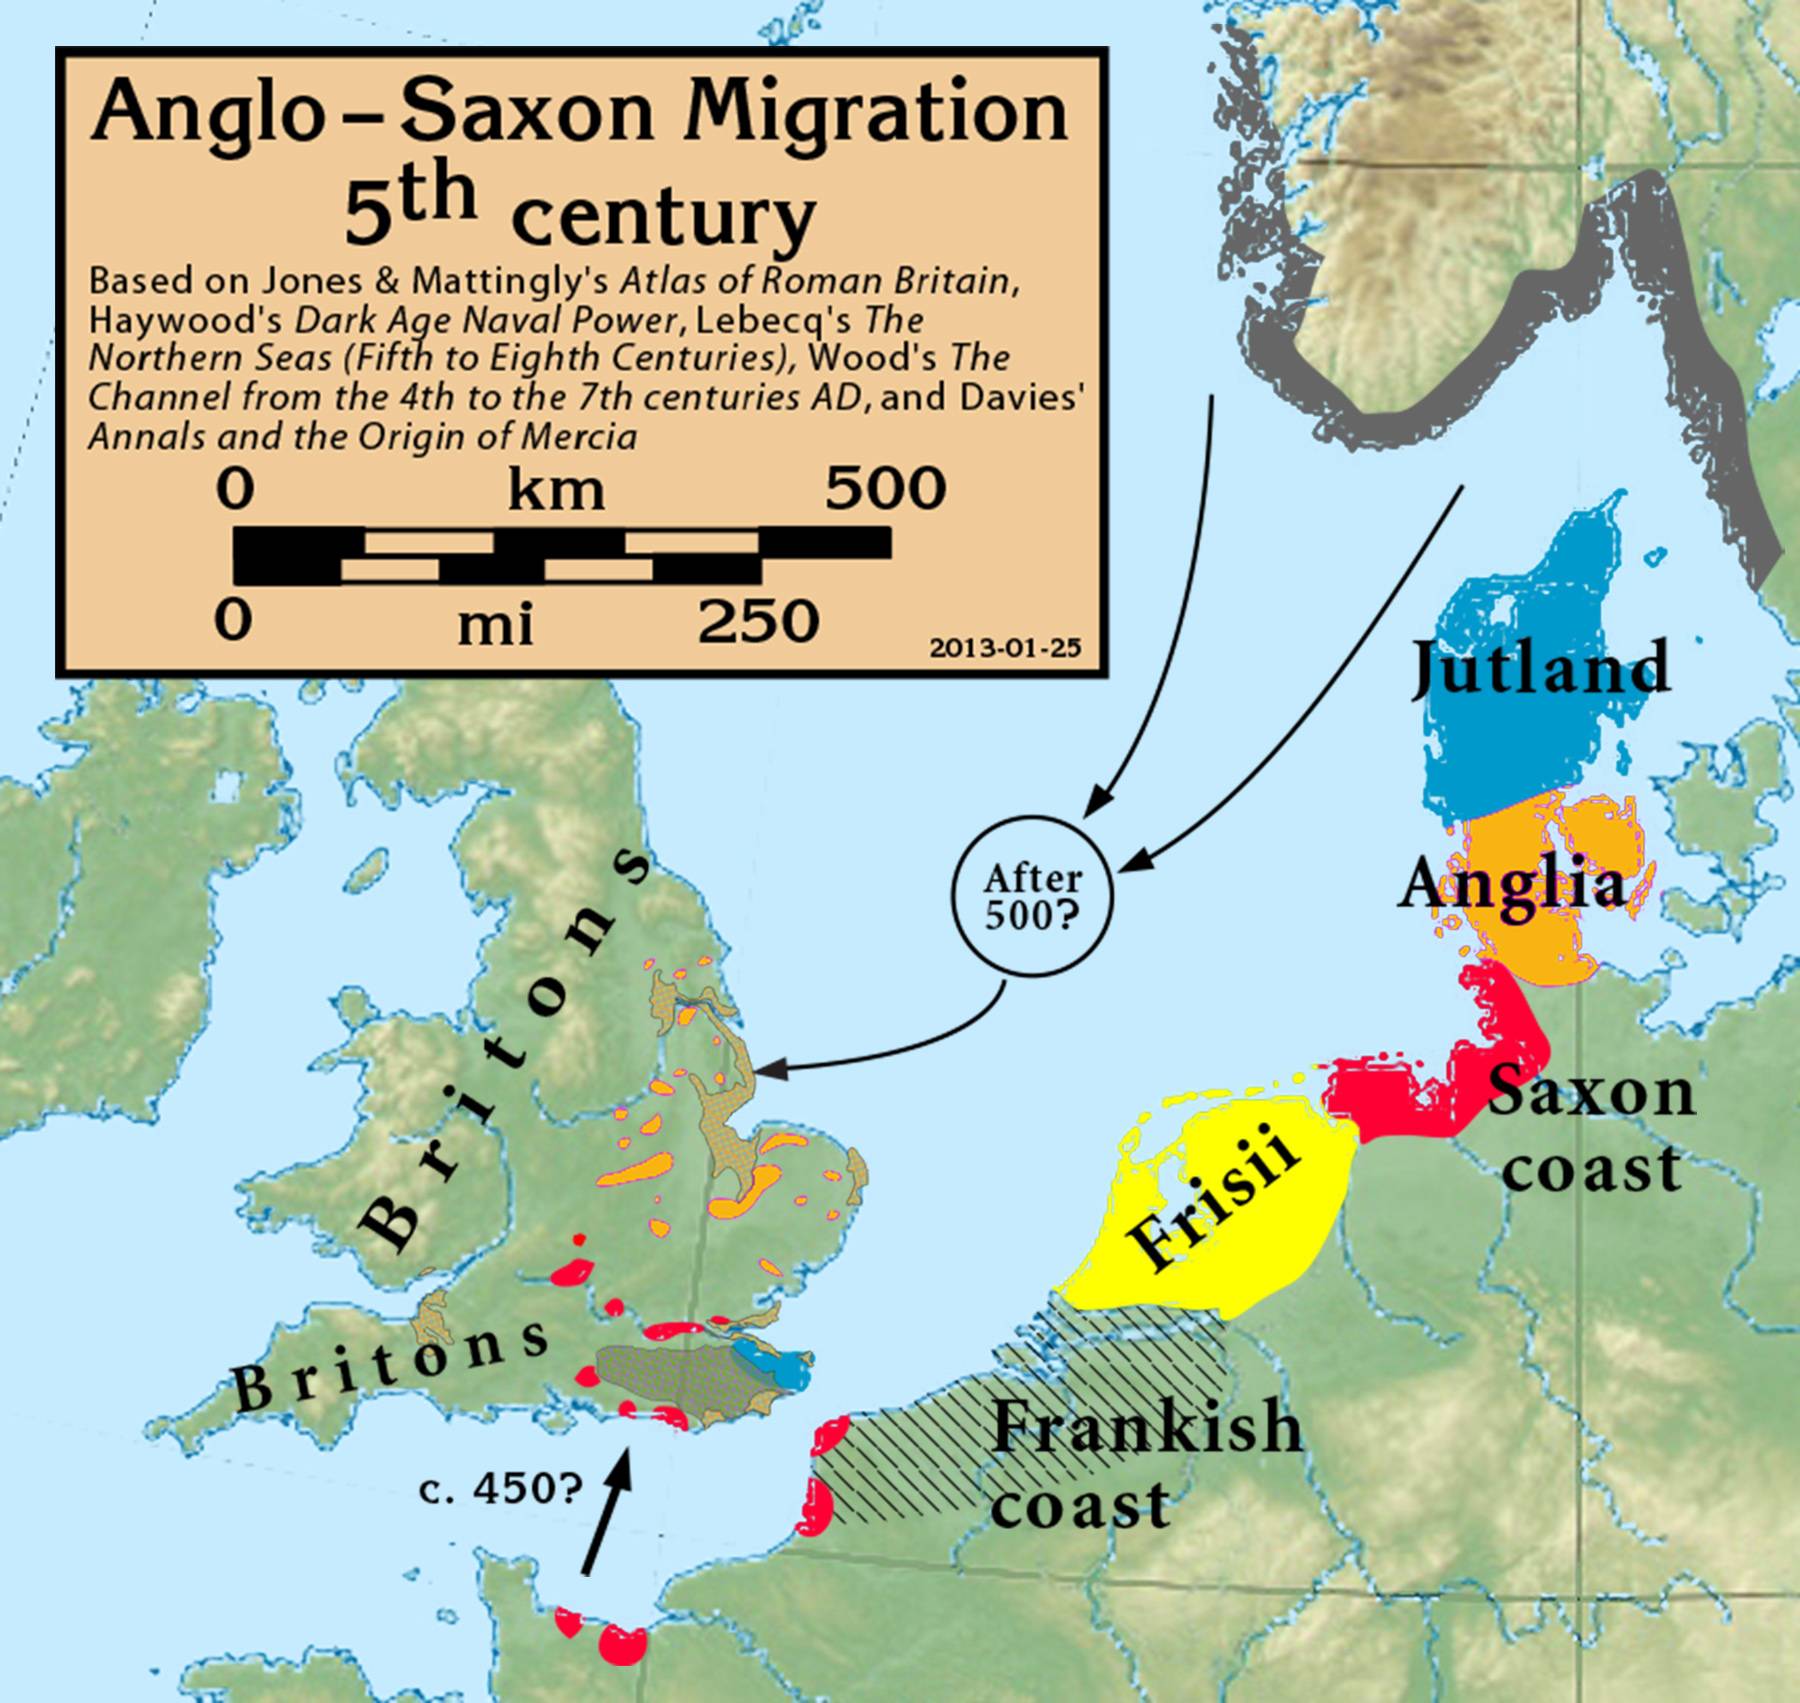 Angelsaksische invasie